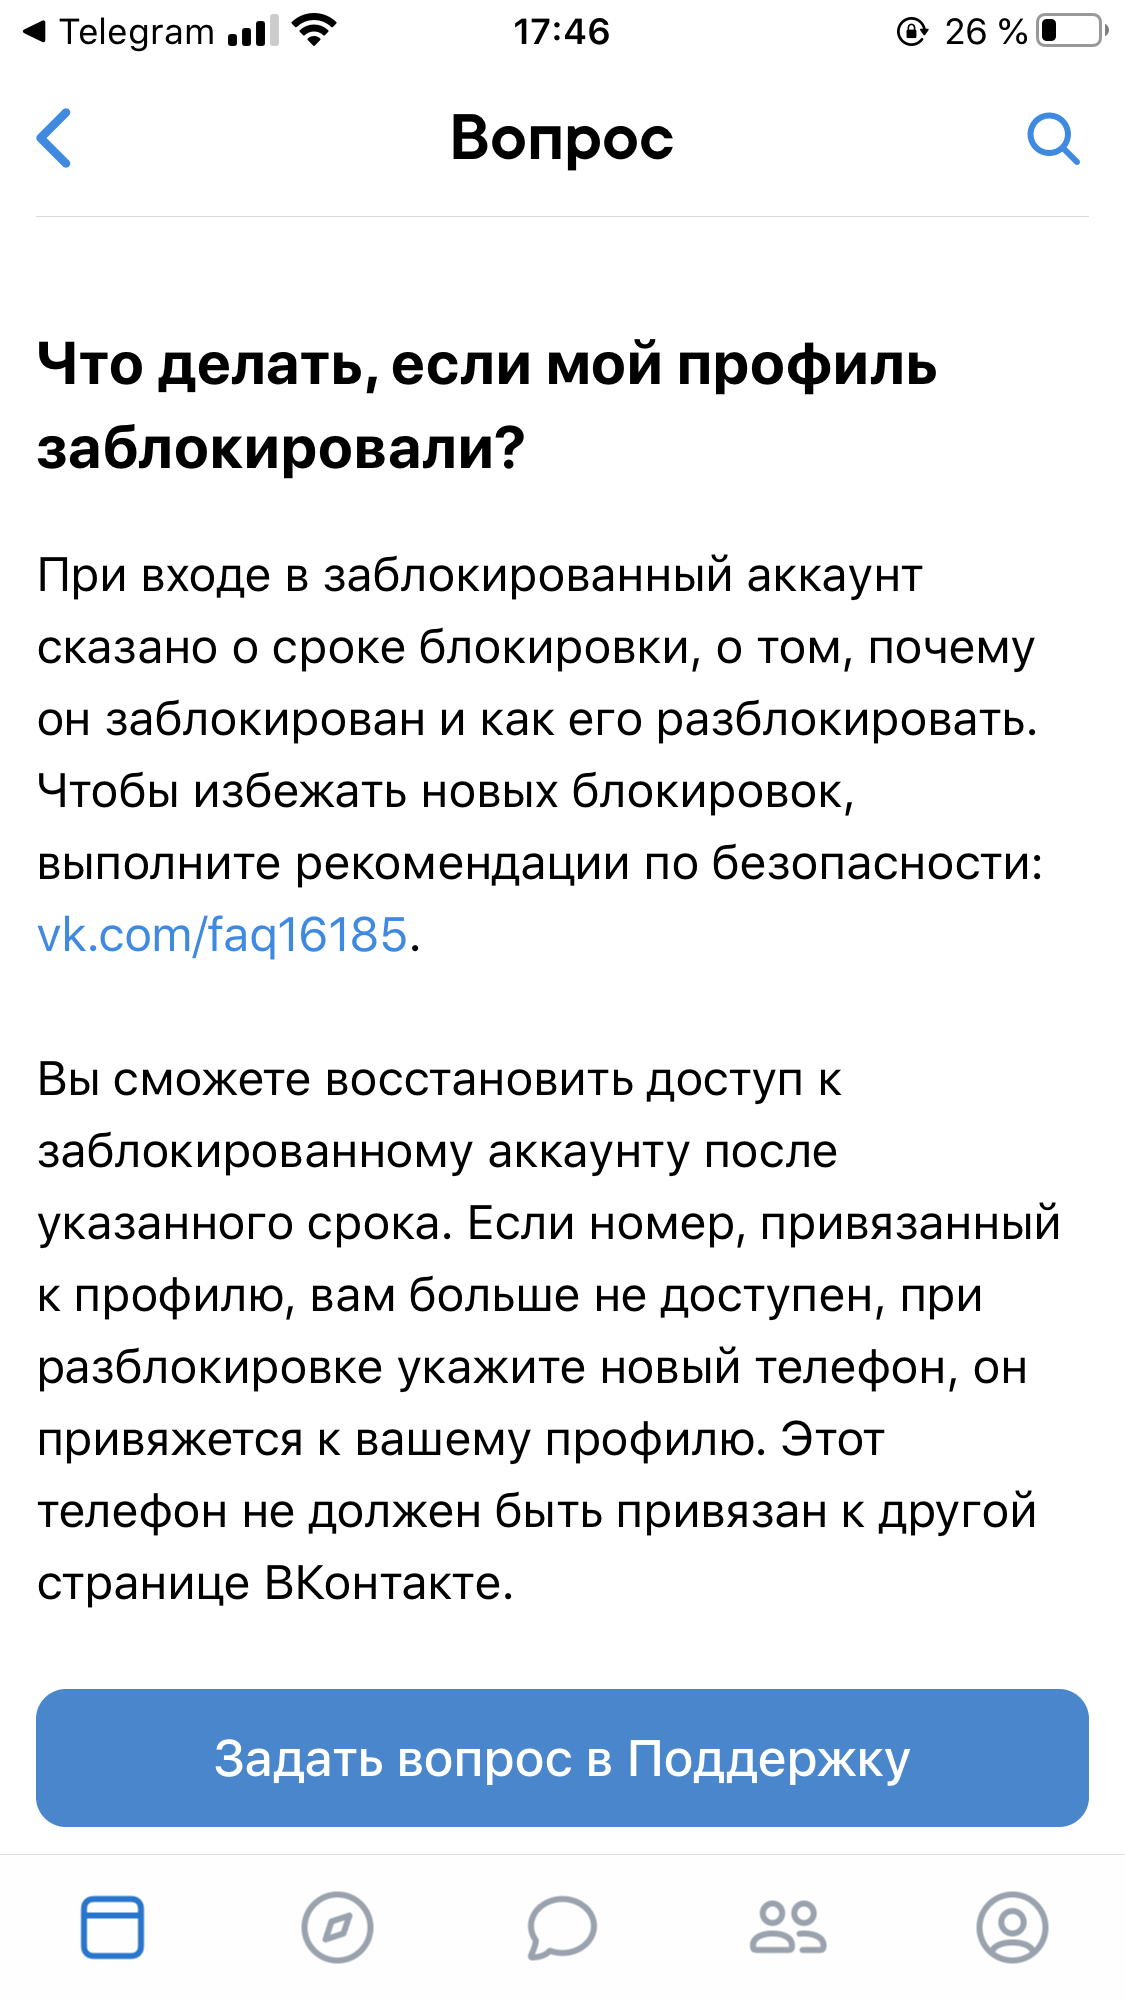 Что запрещено ВКонтакте. Правила и ограничения